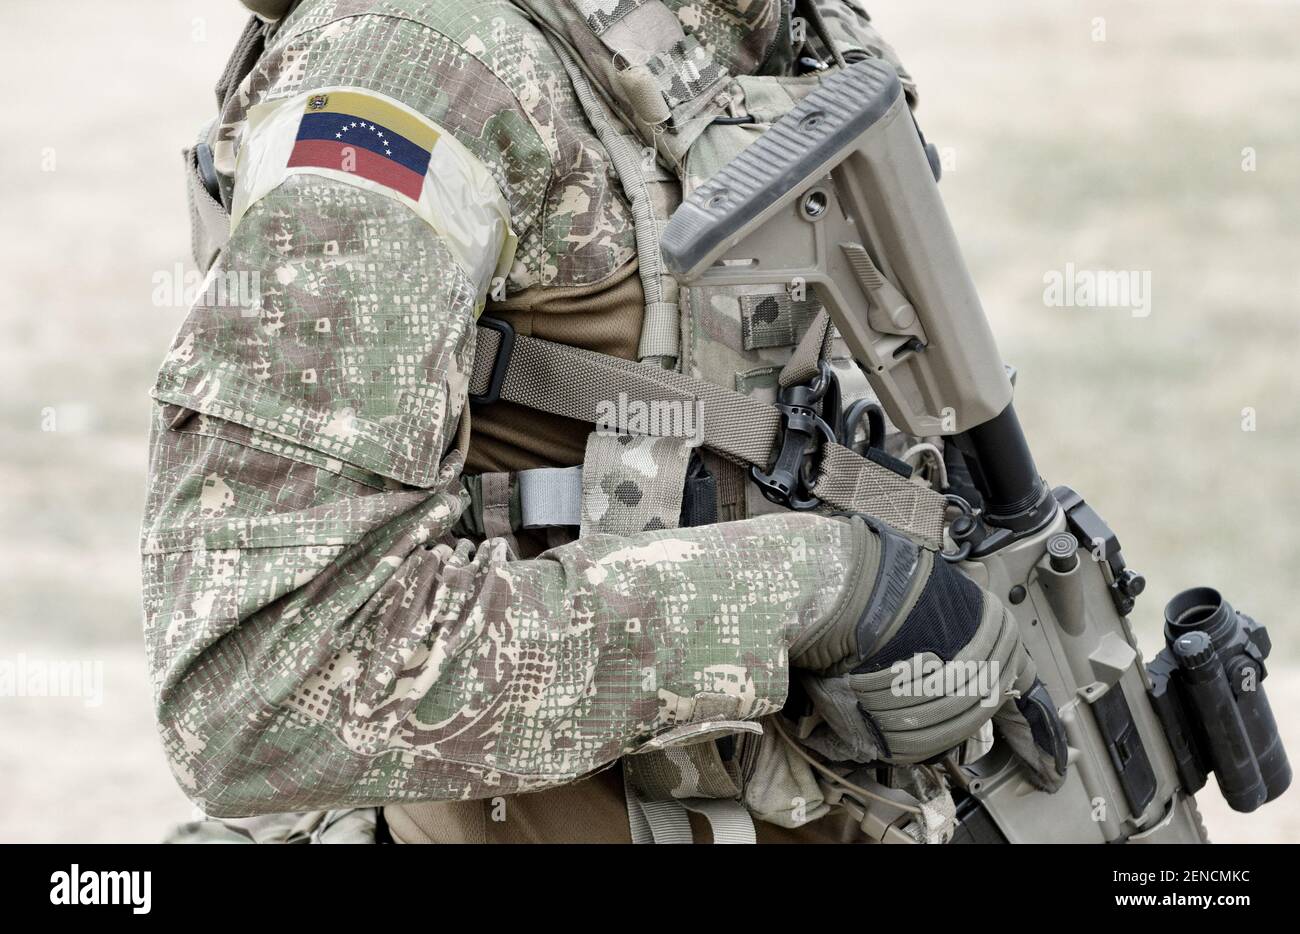 Soldado con rifle de asalto y bandera de Venezuela en uniforme militar. Collage. Foto de stock